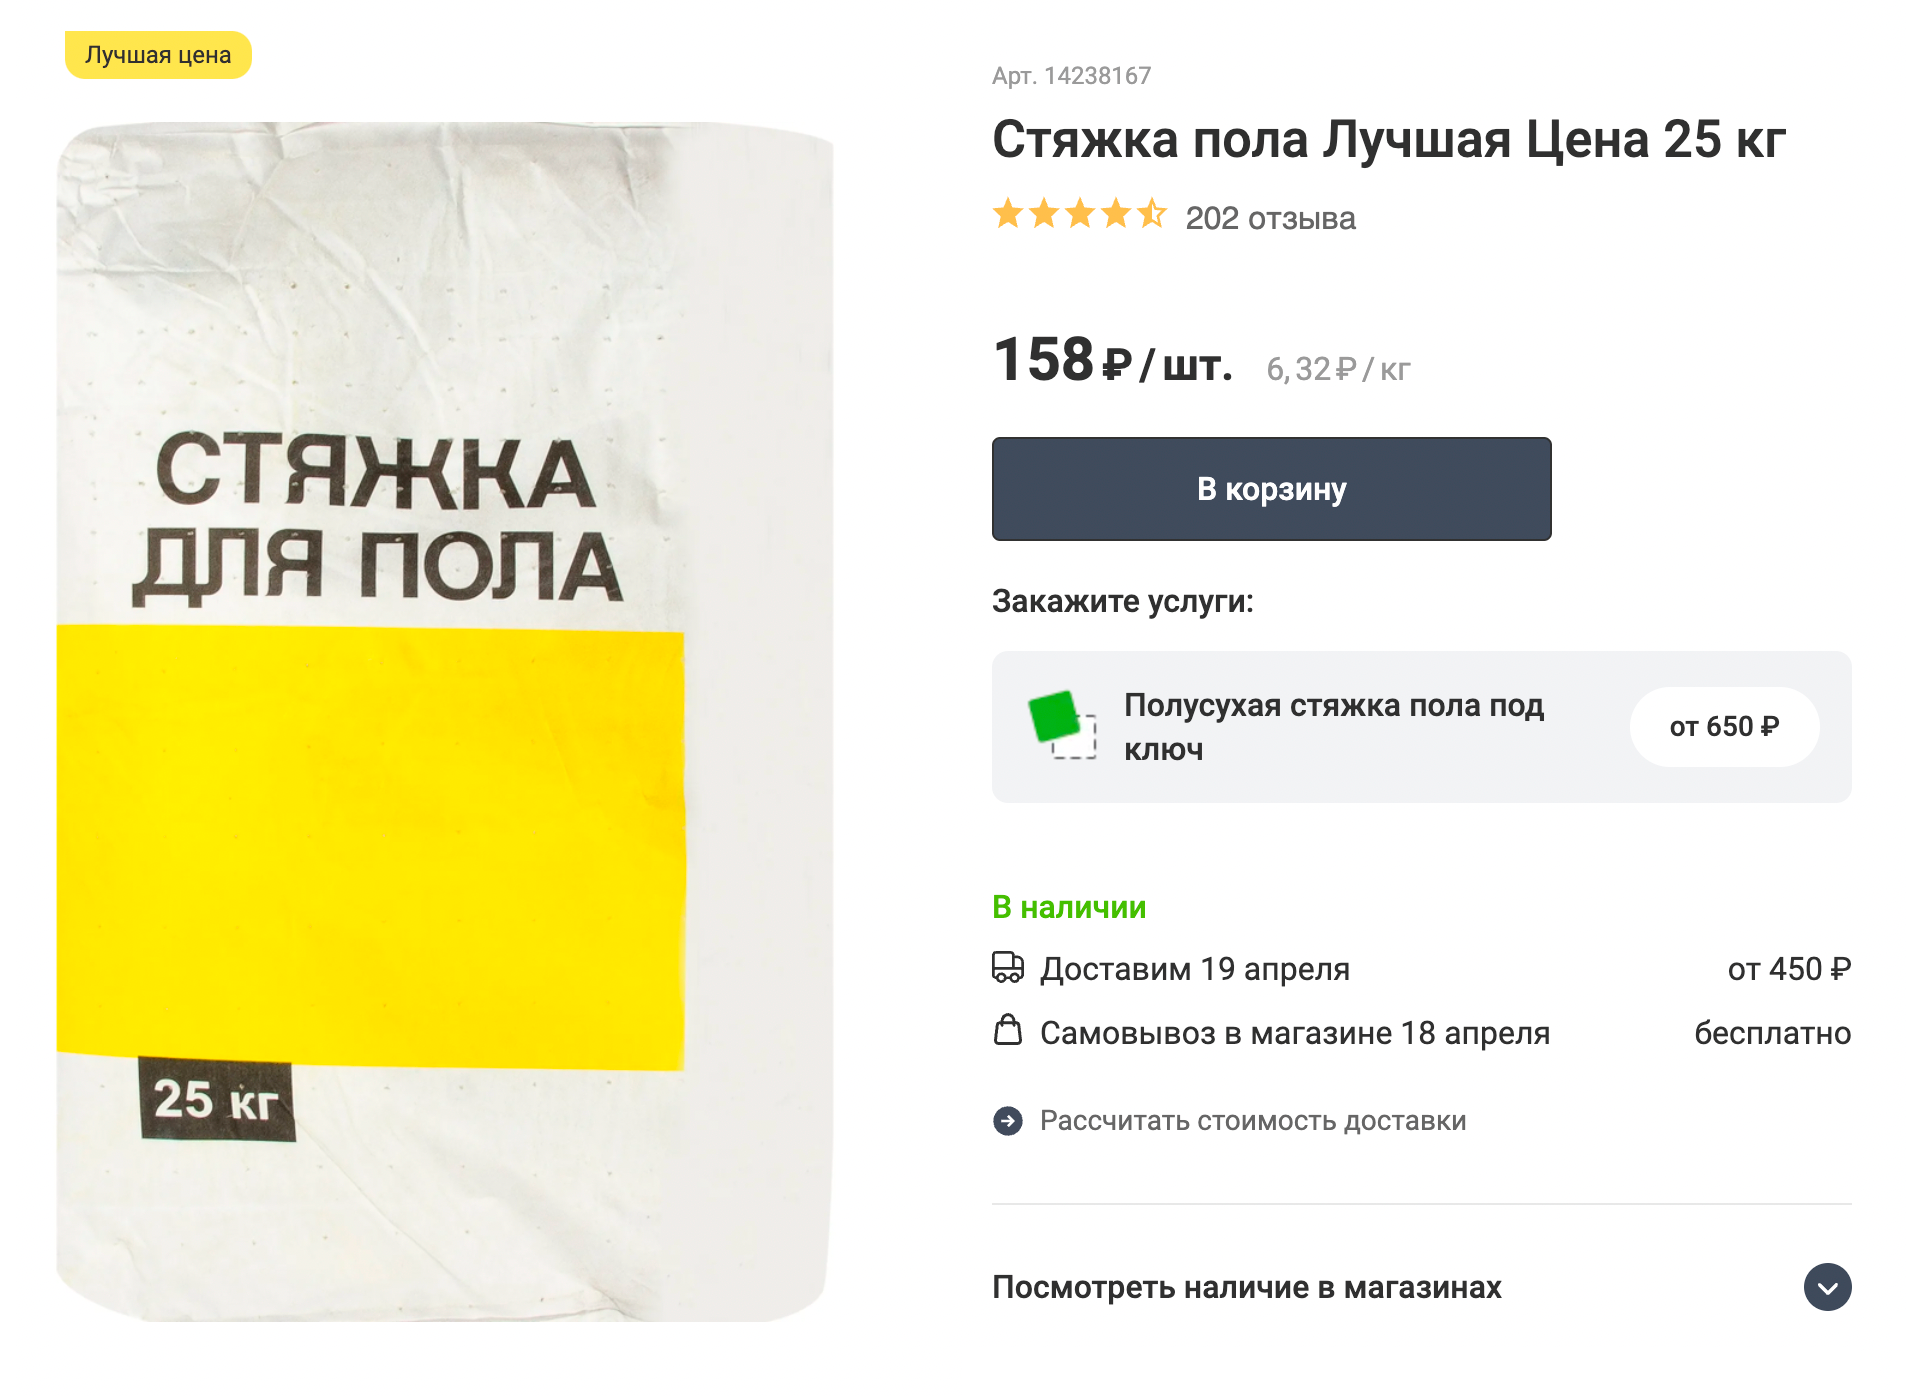 Стяжка пола «Лучшая цена». Мешок 25 кг стоит 128 ₽. Источник: leroymerlin.ru